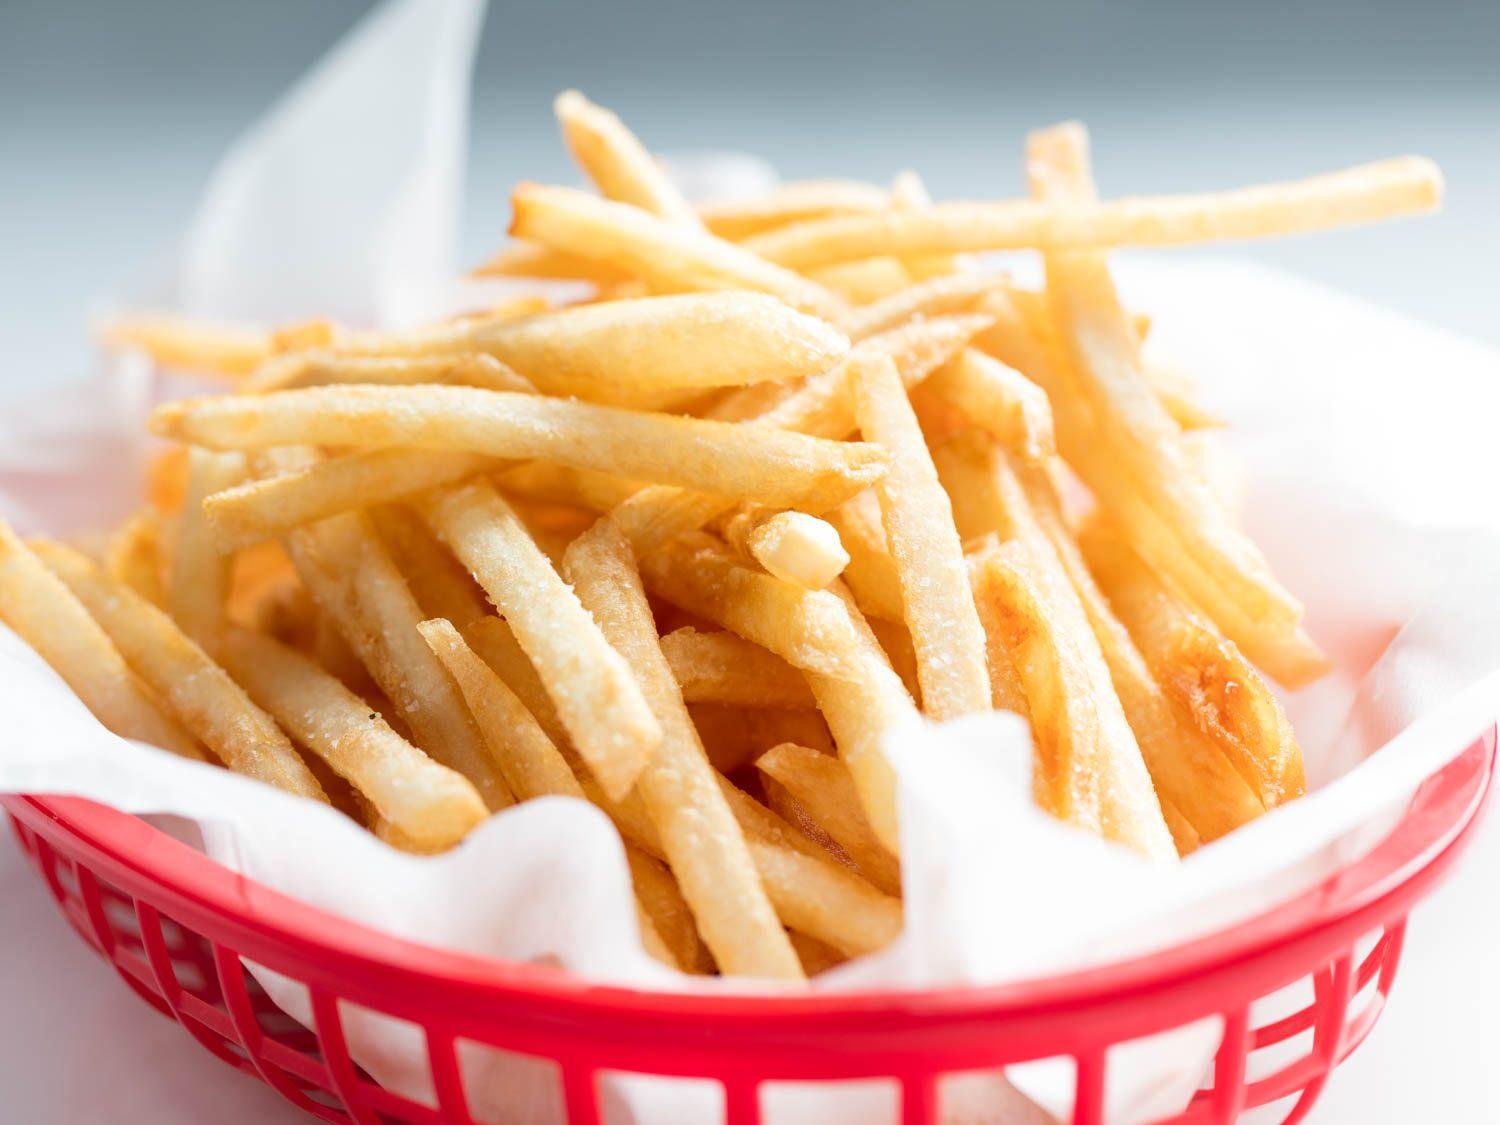 Porções deveriam servir apenas seis batatas fritas, diz professor de Harvard